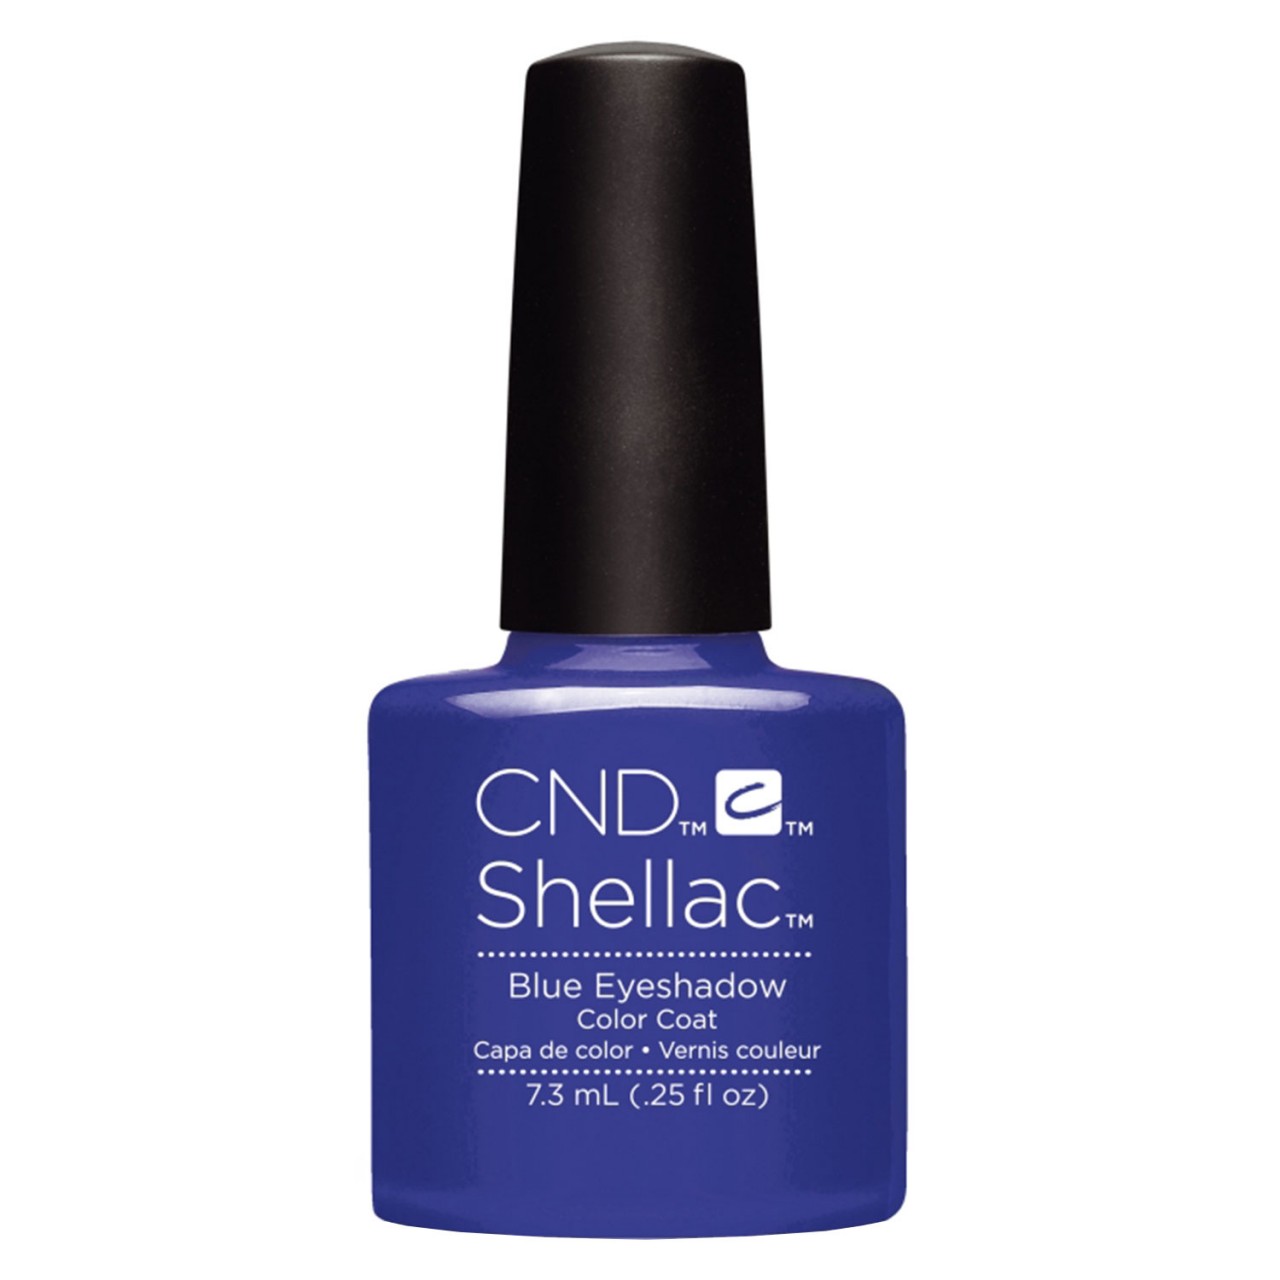 Shellac - Color Coat Blue Eyeshadow von CND